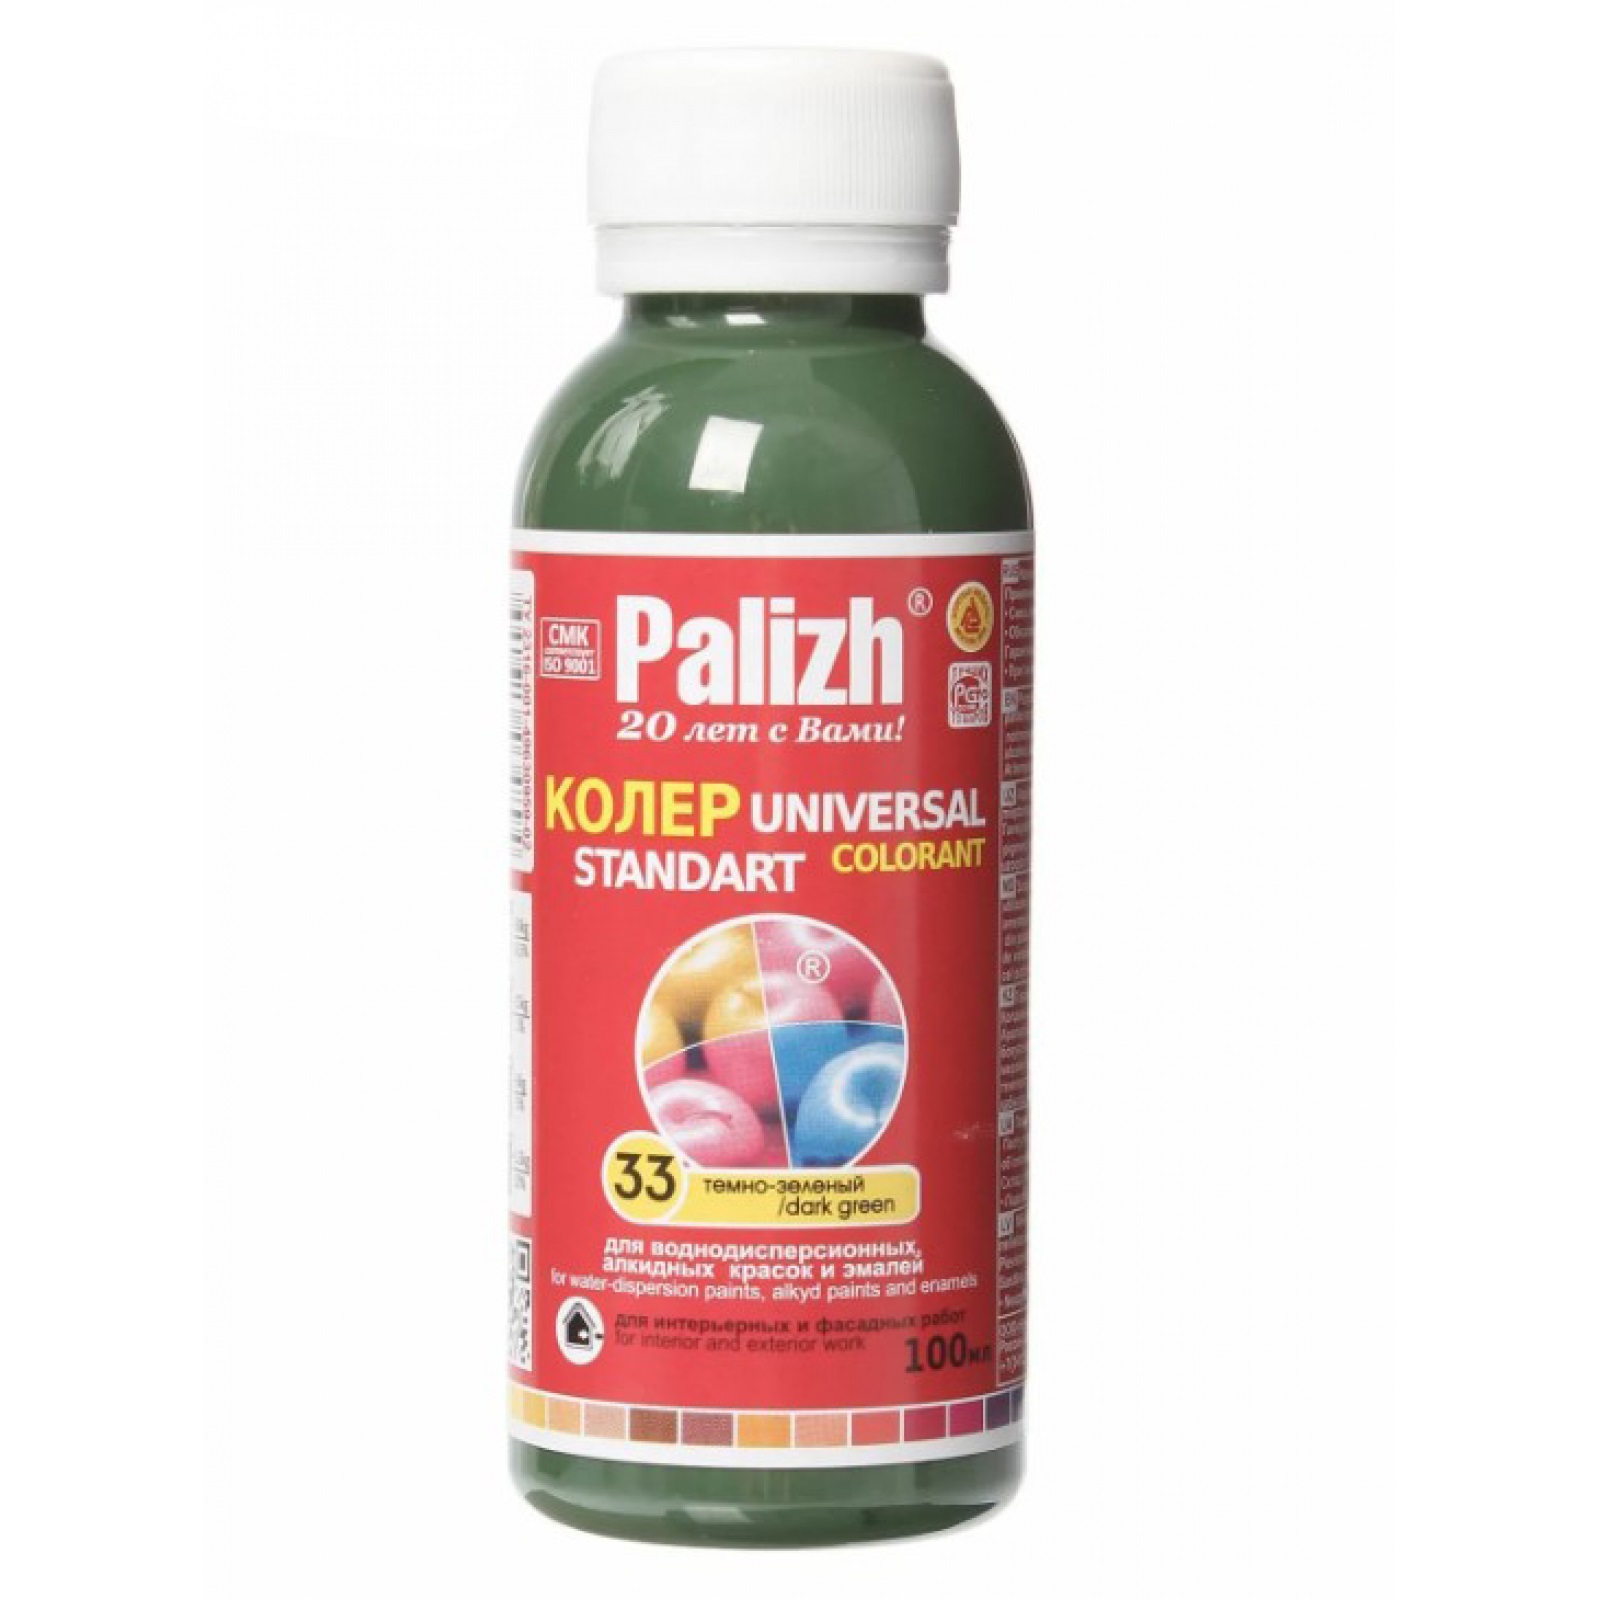 Паста универсальная колеровочная Palizh темно-зеленый - 100 мл колер паста palizh 33 темно зеленый 100 мл